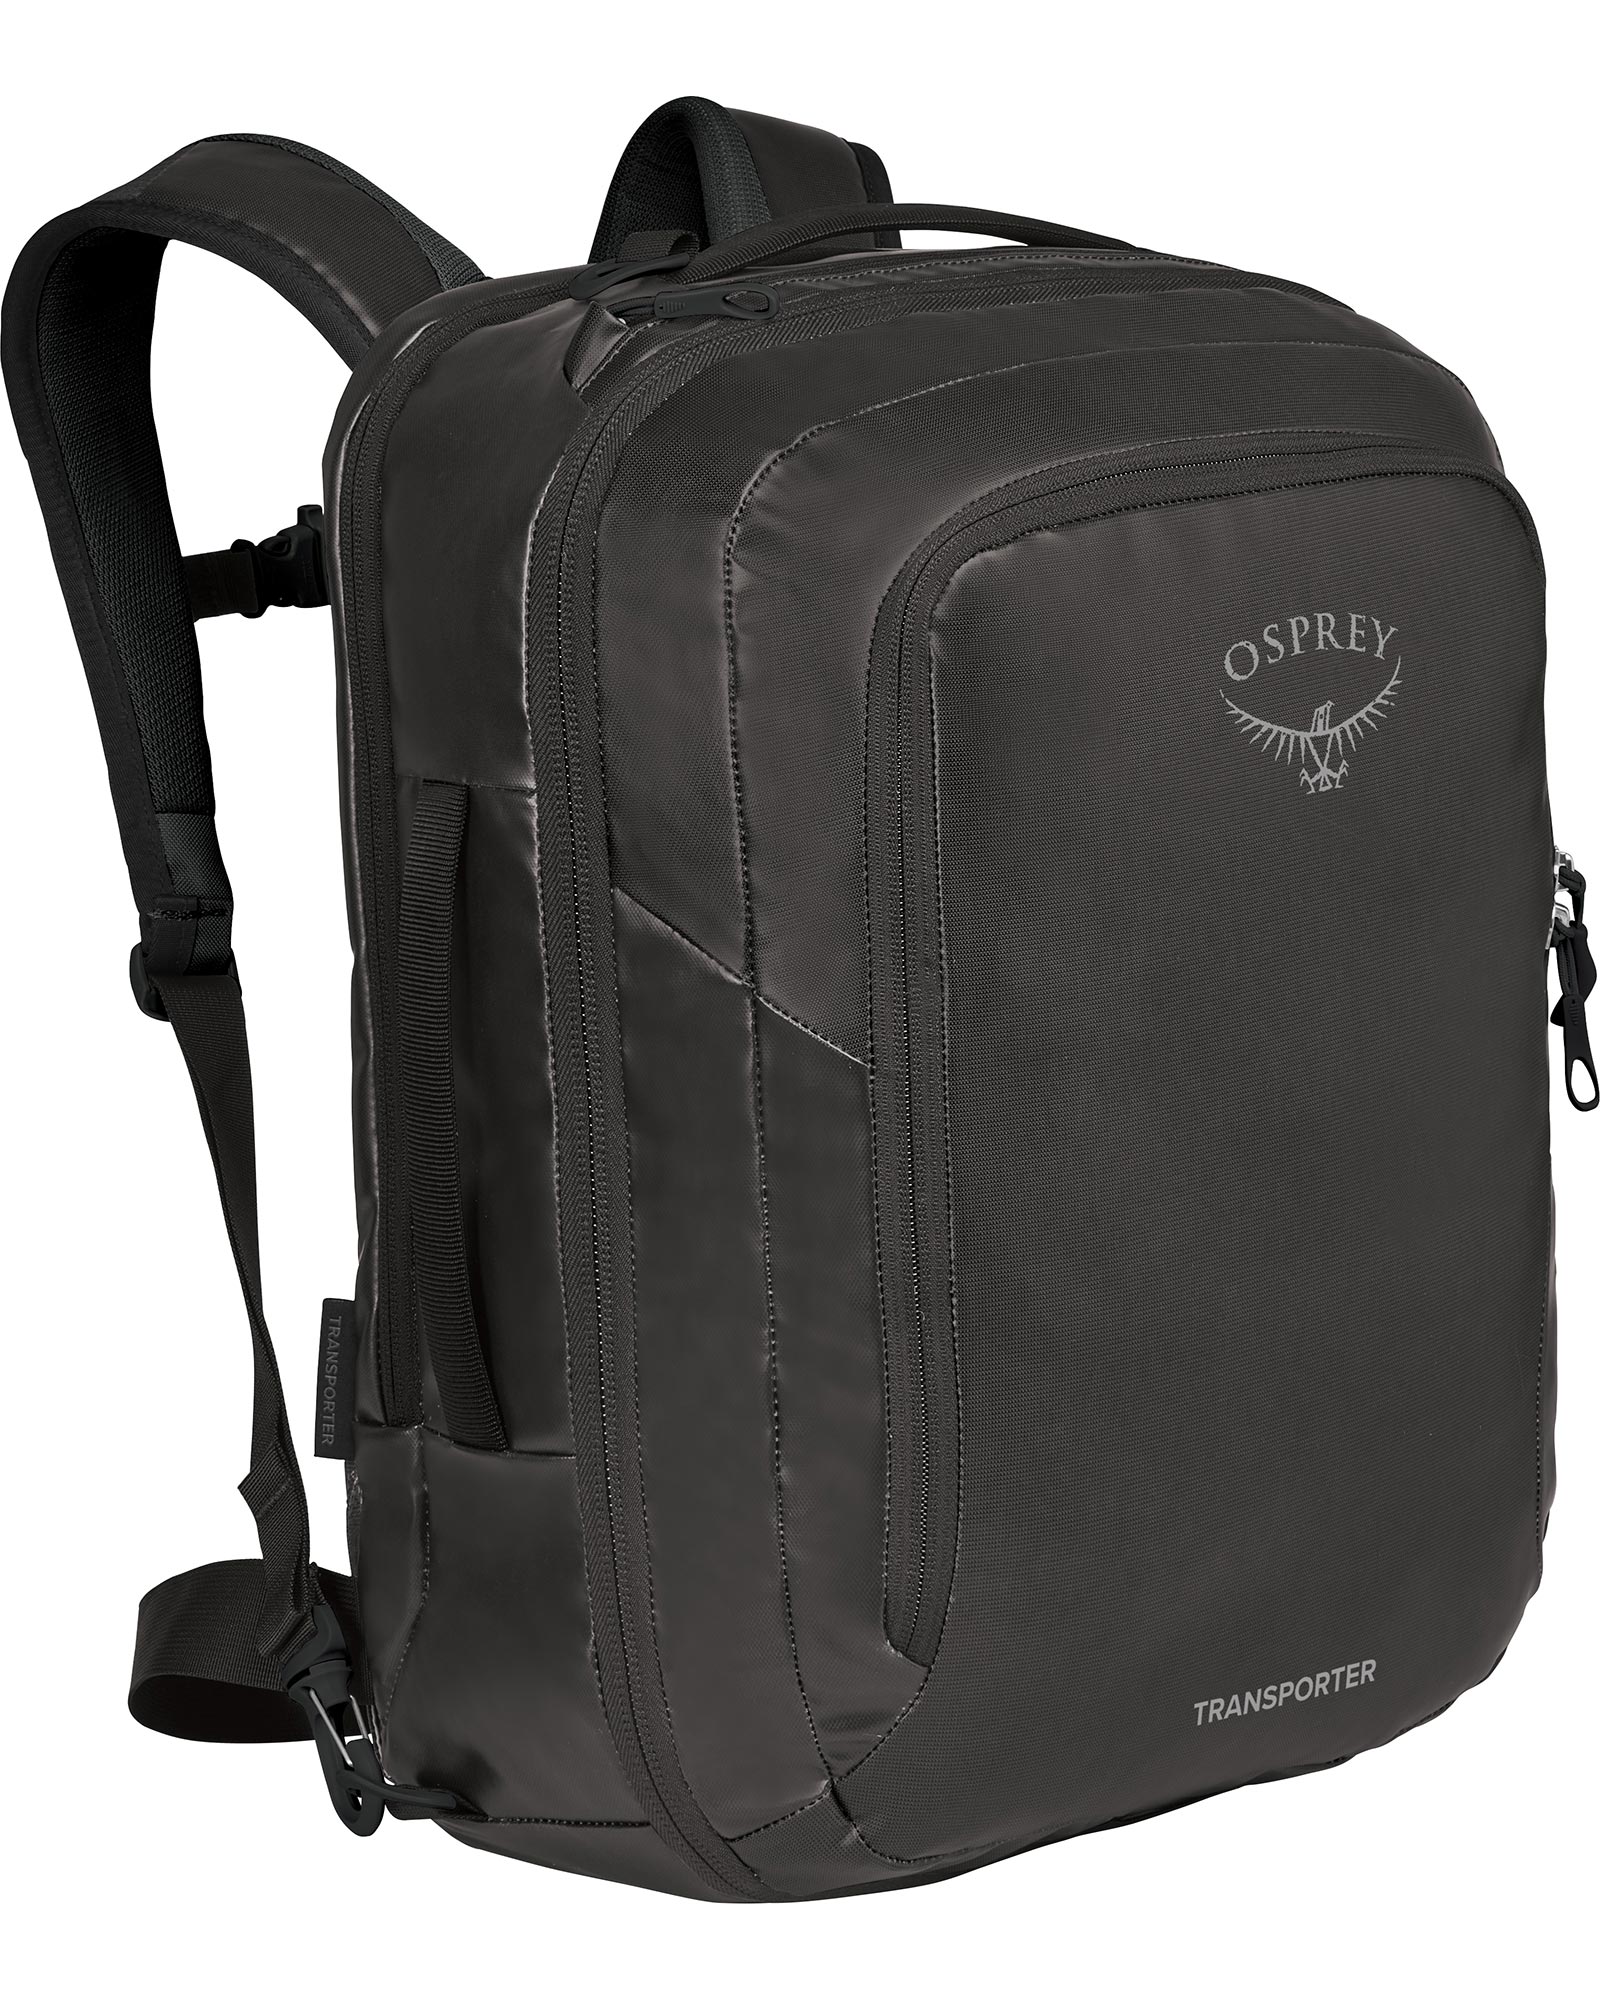 Osprey Transporter Global Carry On Bag - black